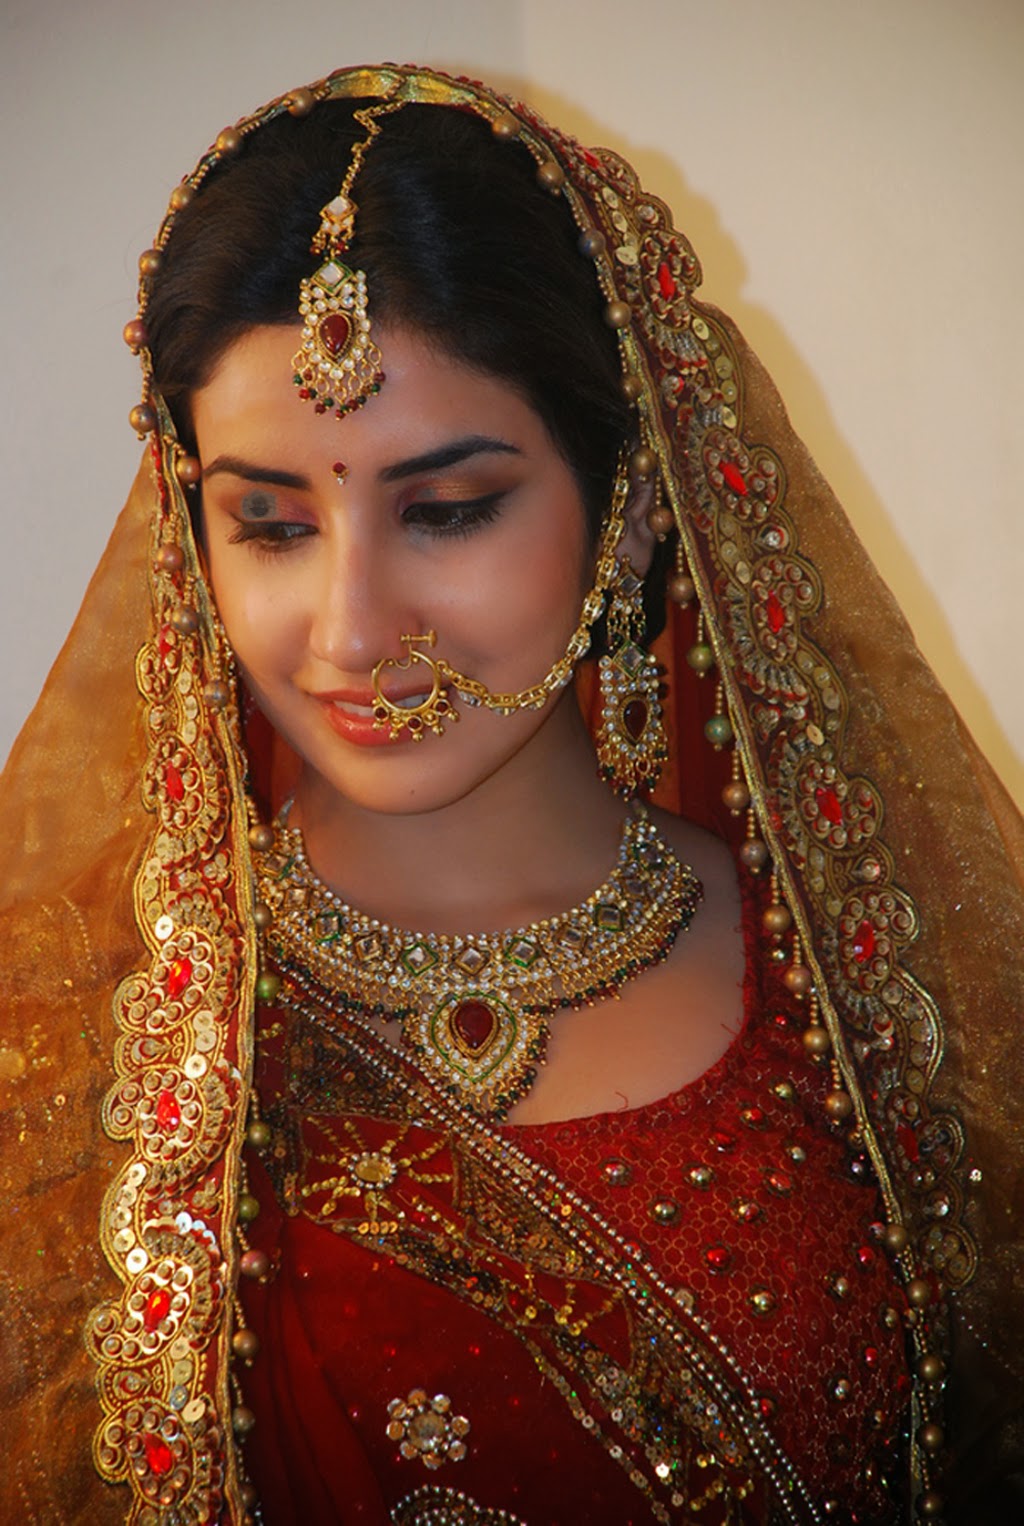 nombre de parul fondo de pantalla,novia,tradicion,sari,cambio de imagen,vestido de novia